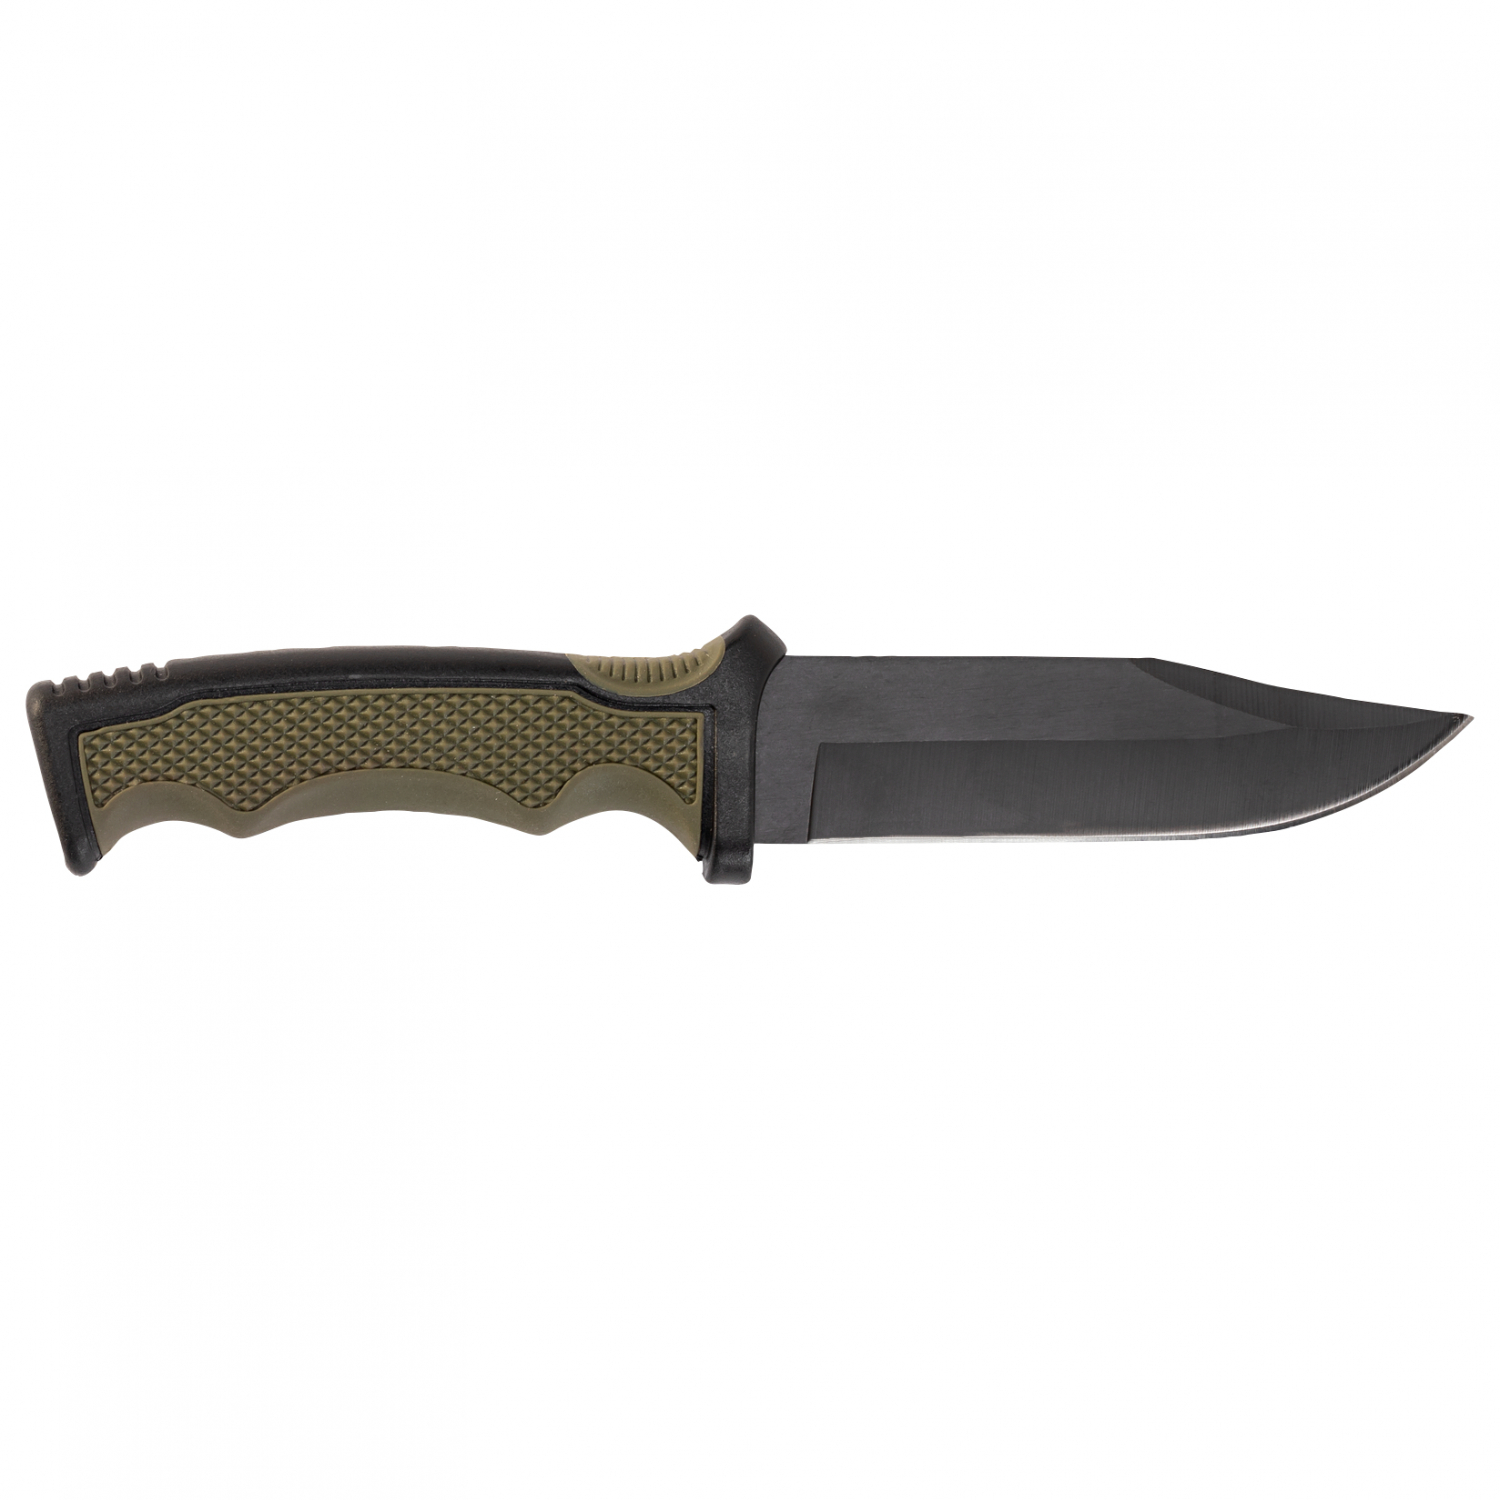 Whitefox Hunting knife Sharp Edge 